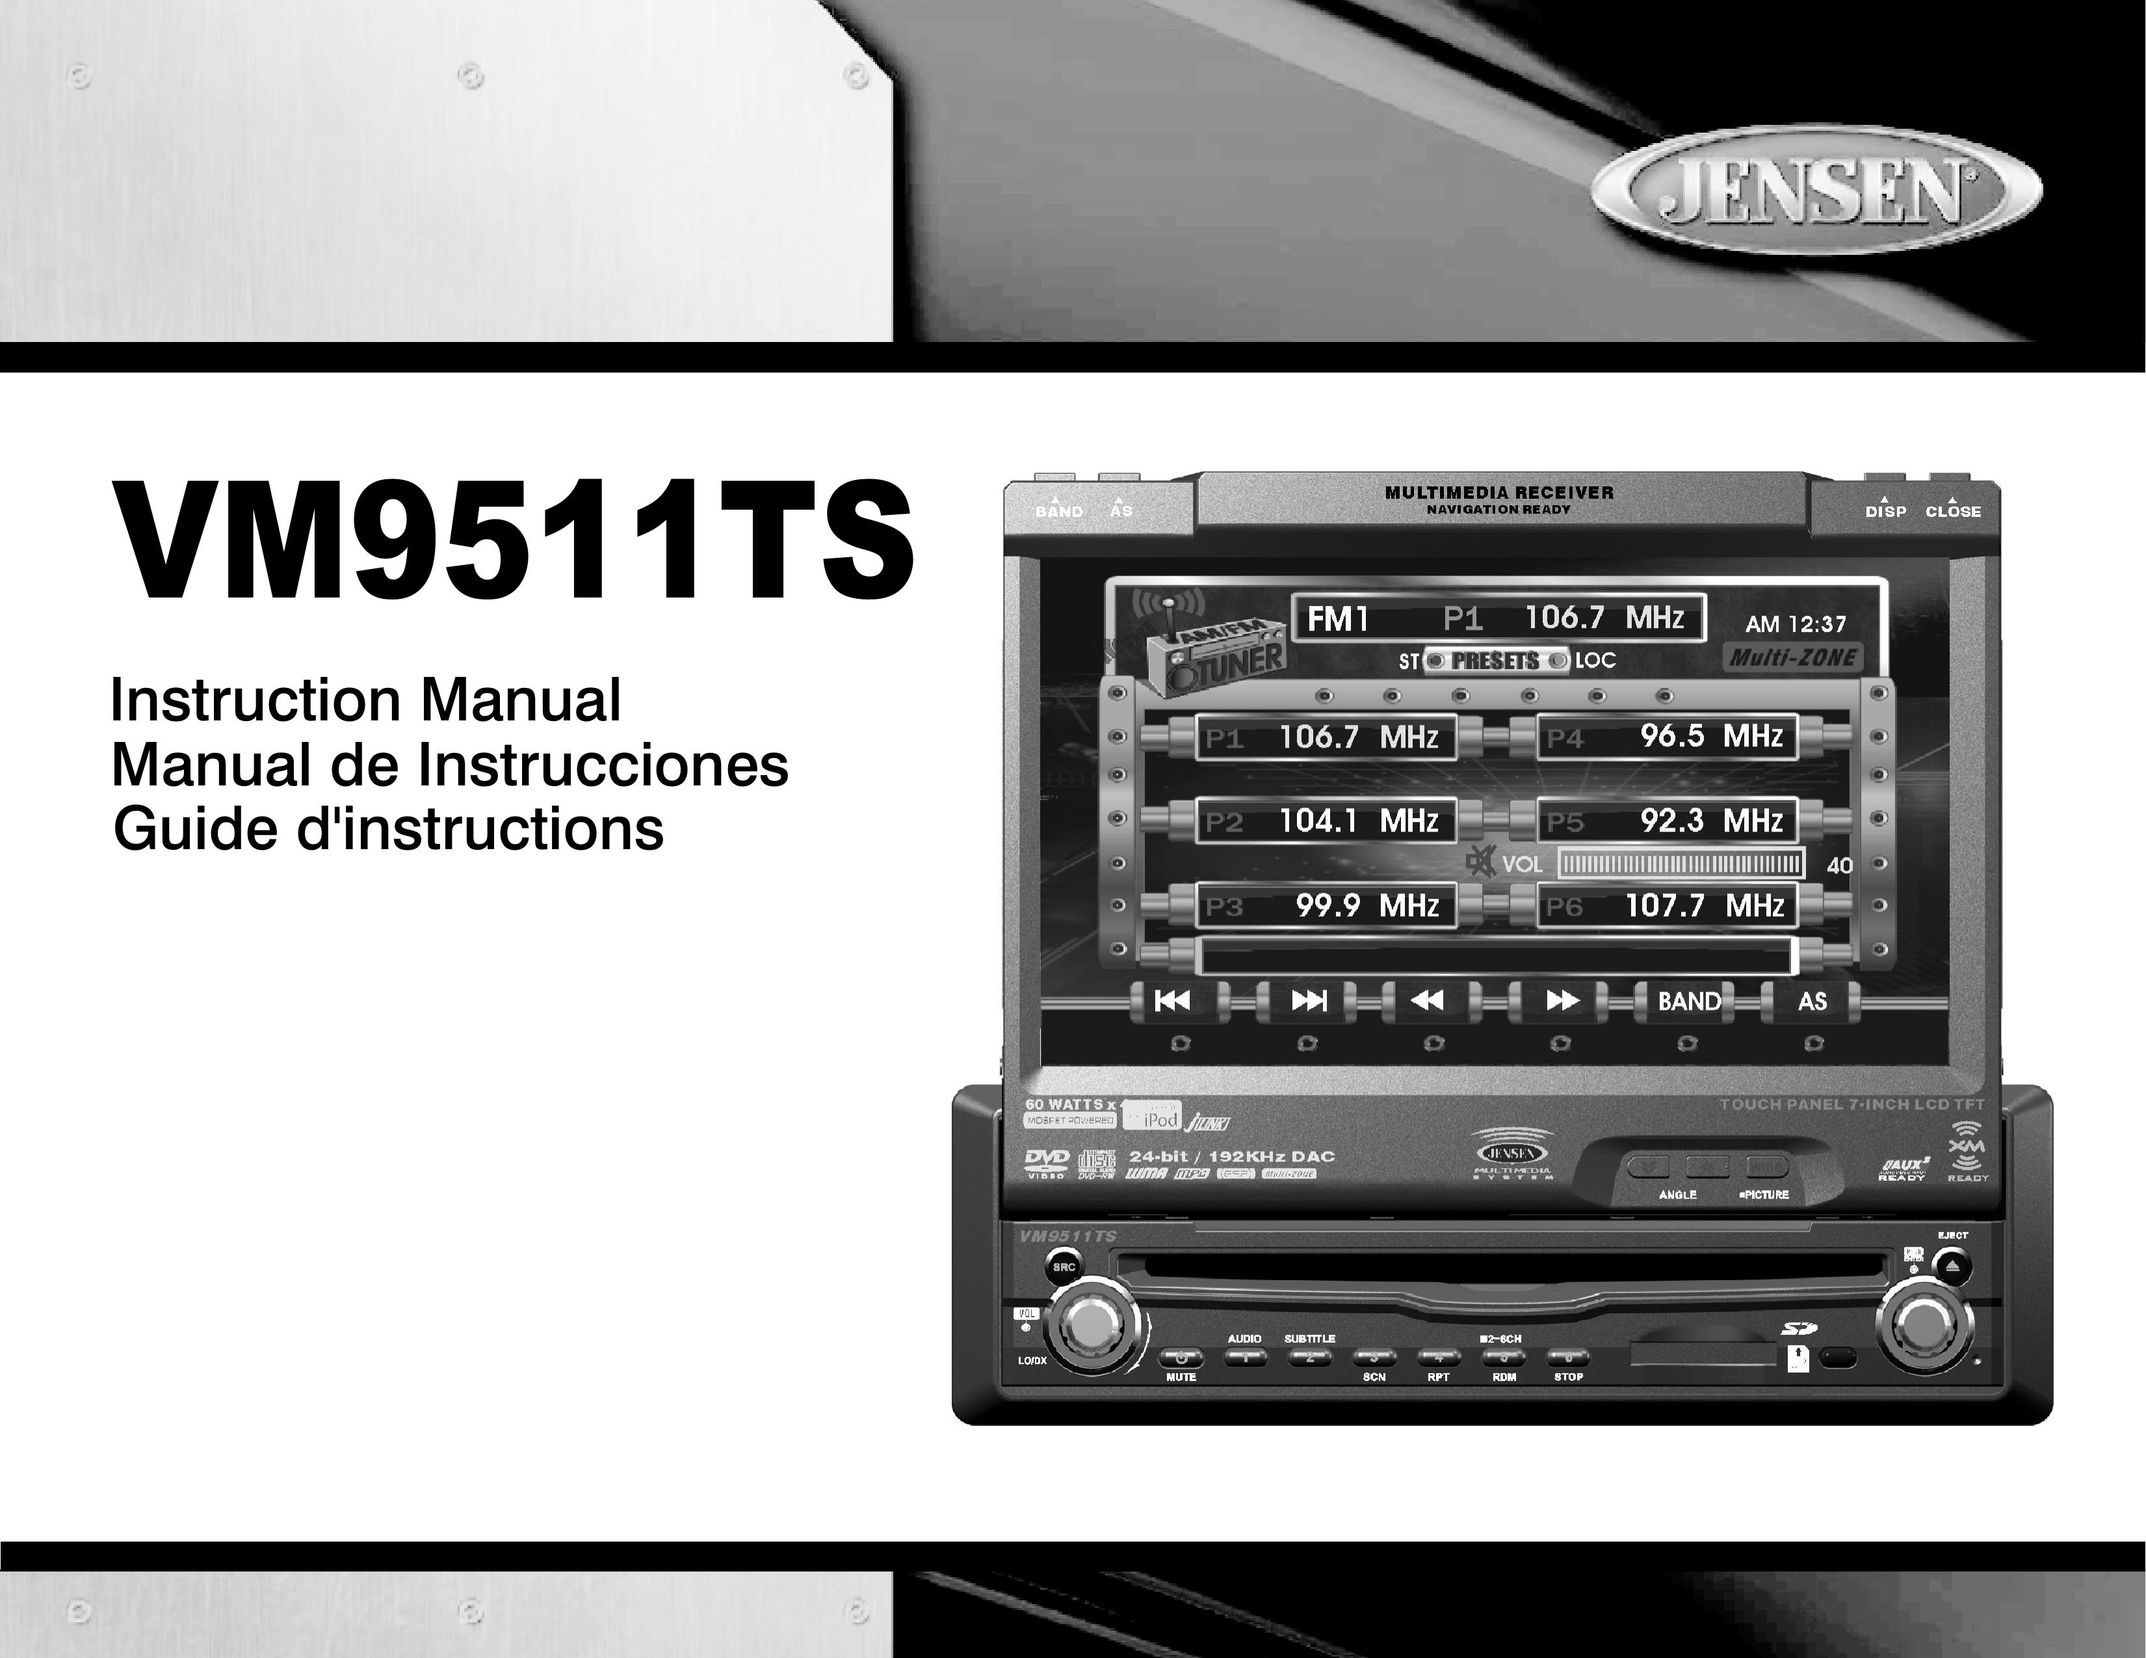 Jensen Tools VM9511TS Stereo System User Manual